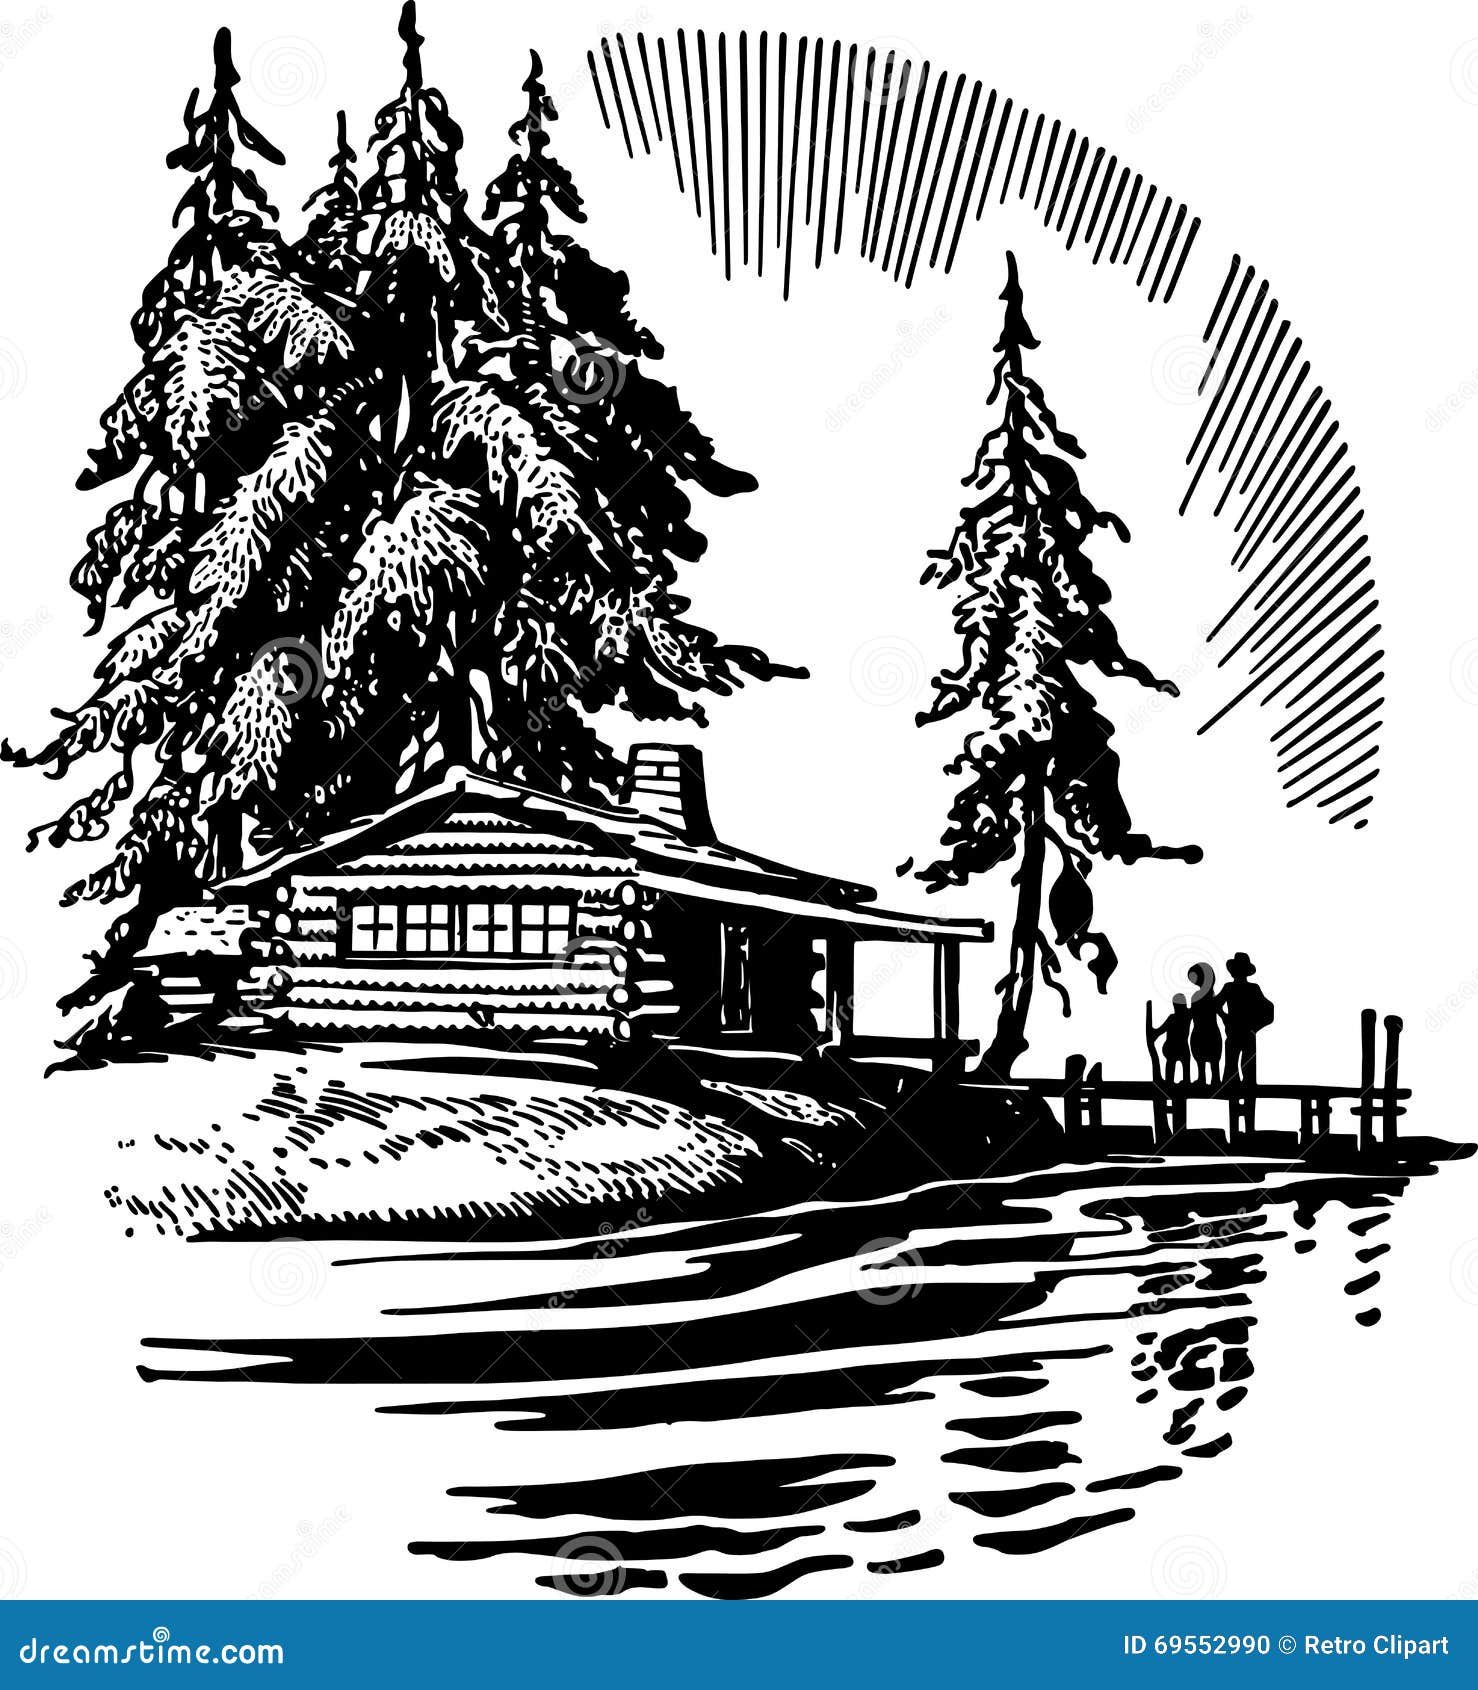 beautiful cabin by a lake